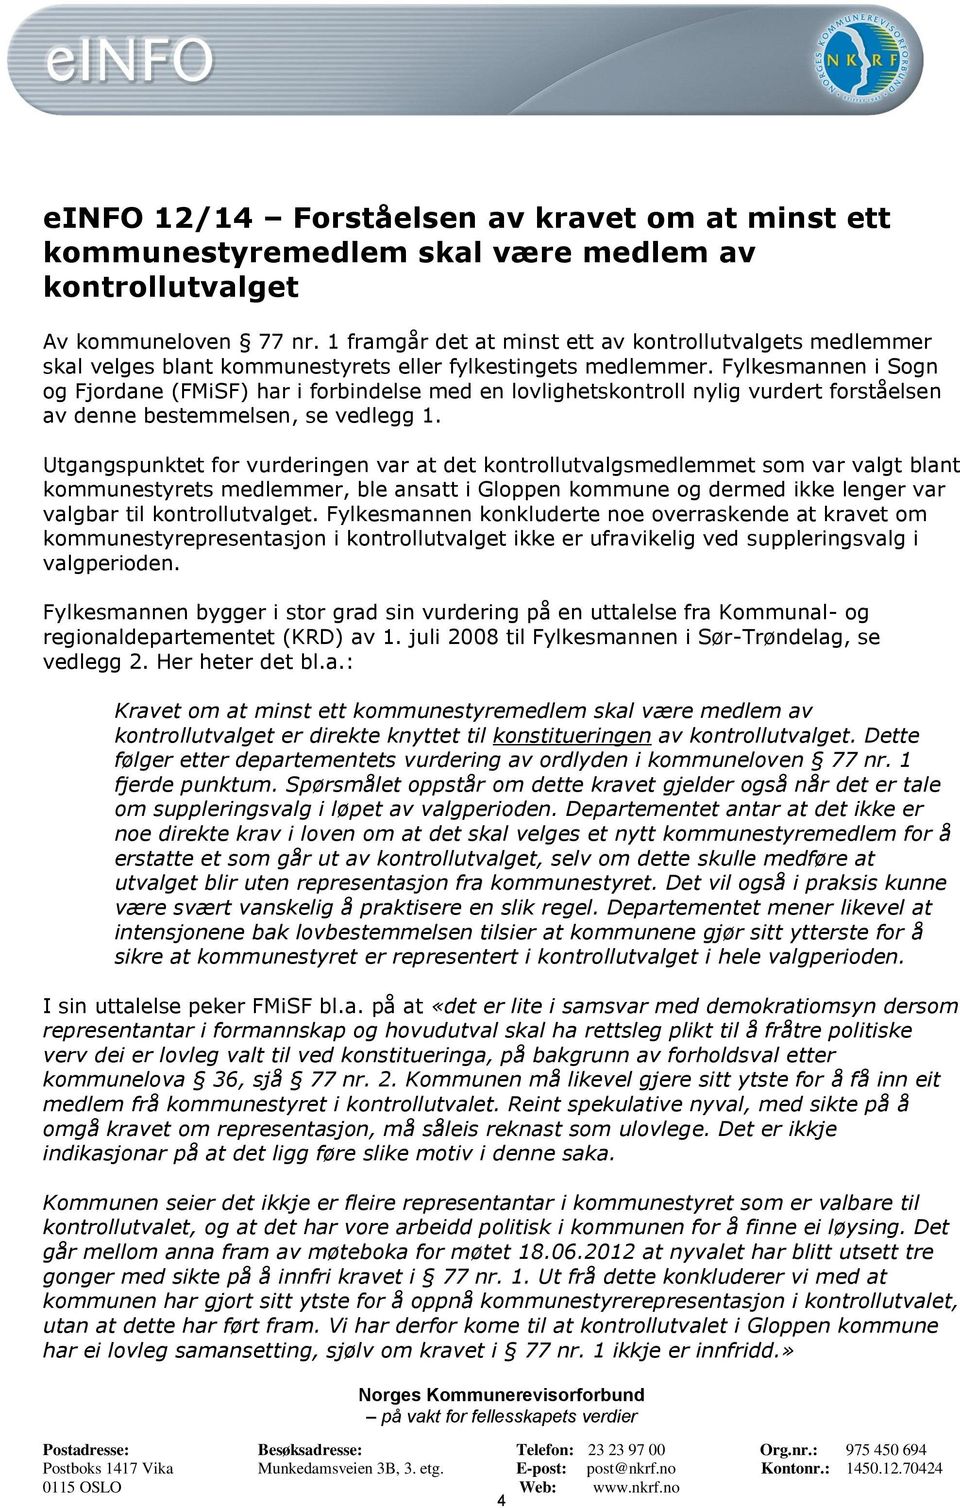 Fylkesmannen i Sogn og Fjordane (FMiSF) har i forbindelse med en lovlighetskontroll nylig vurdert forståelsen av denne bestemmelsen, se vedlegg 1.